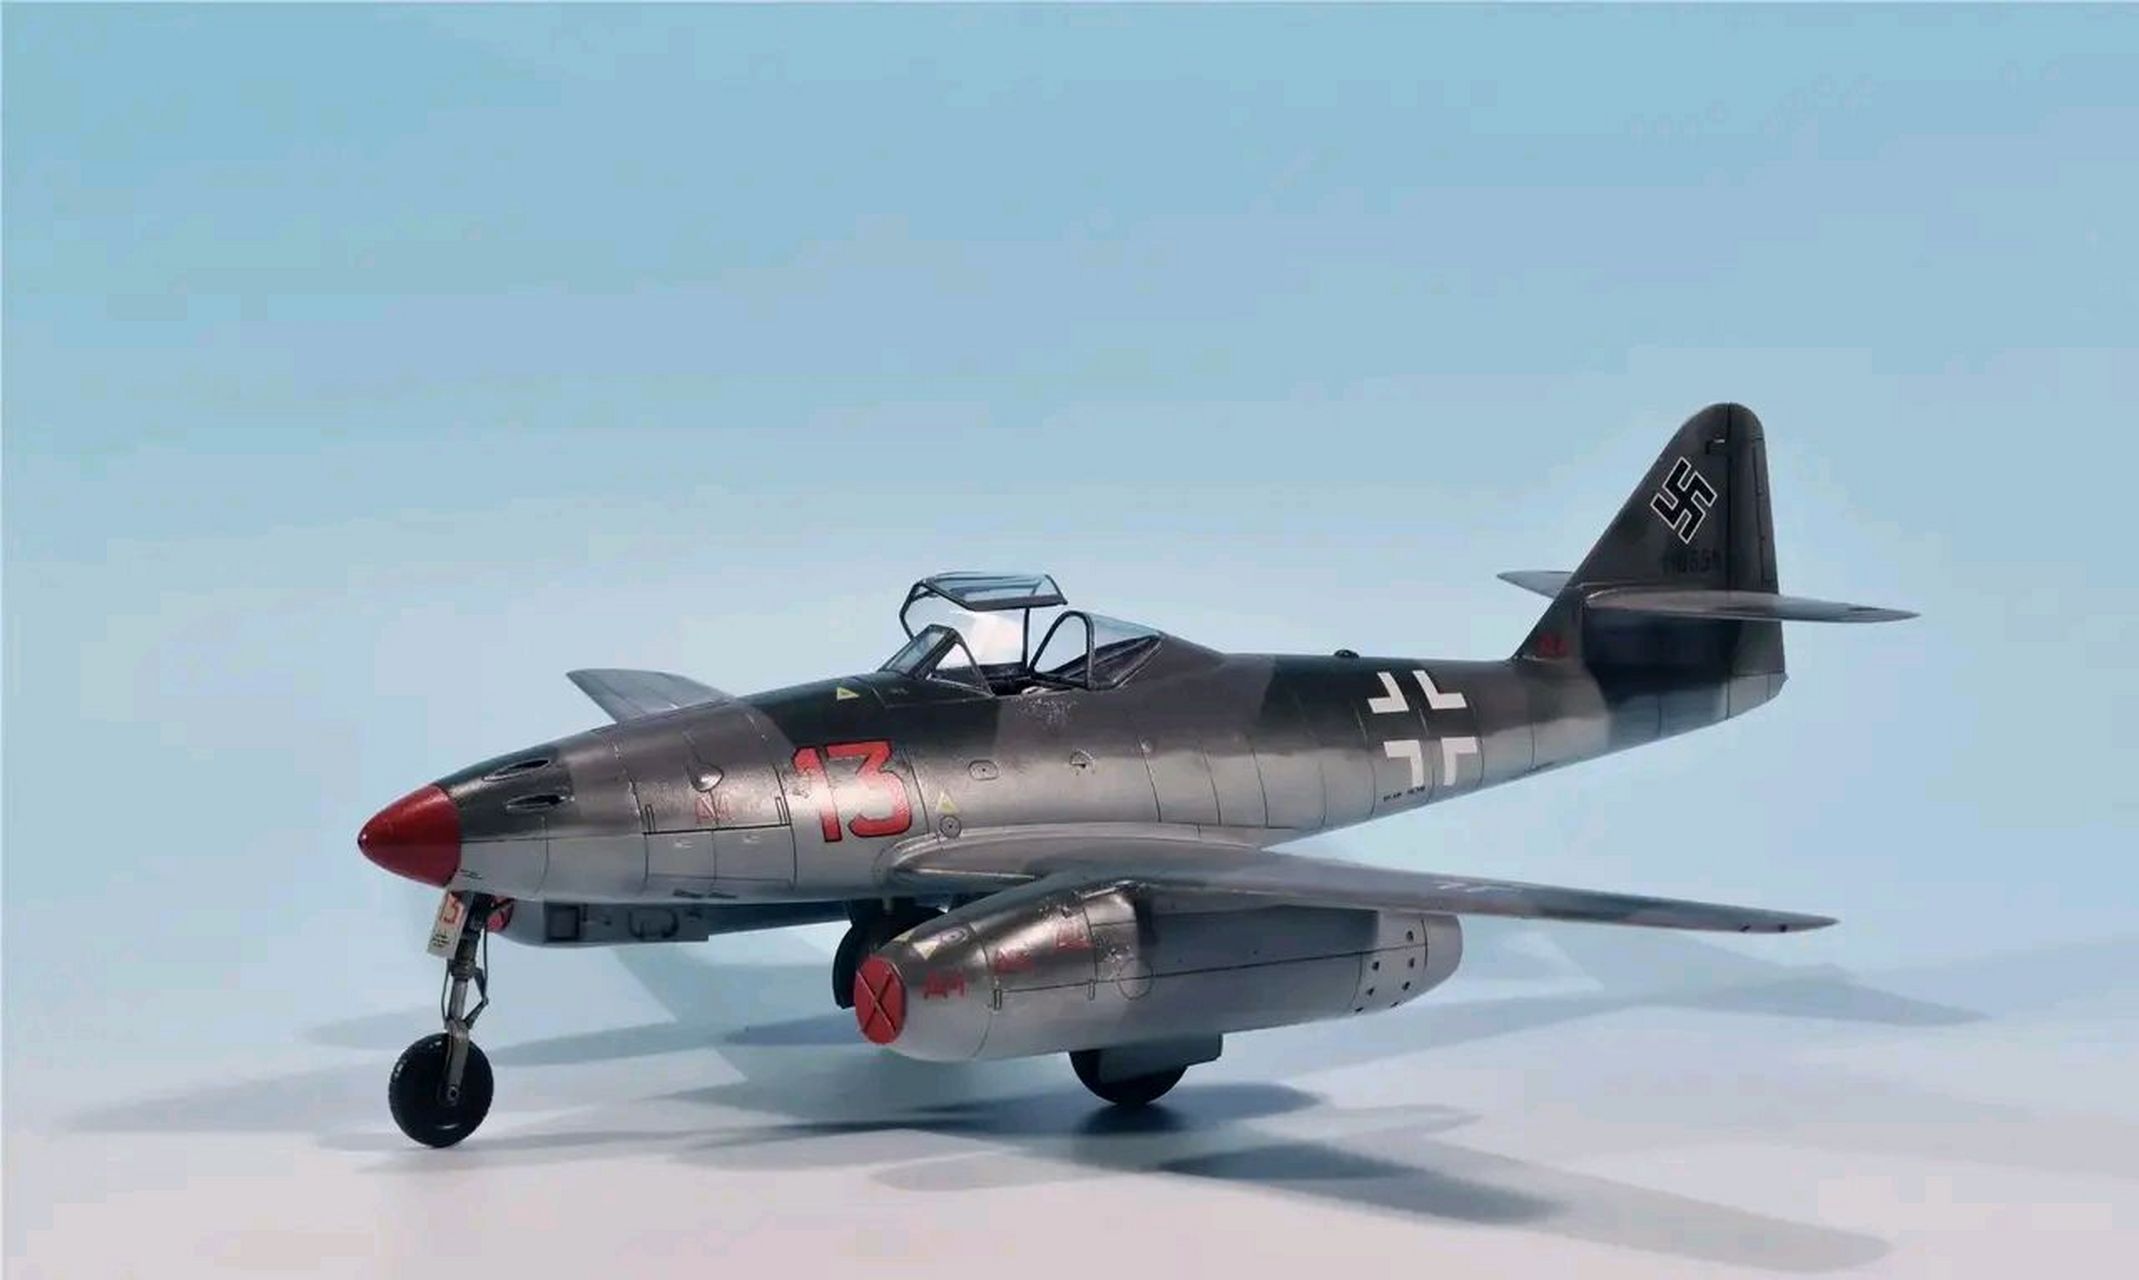 二战时期生产最多的十种战斗机 第一名:伊尔2战斗机,前苏联,36183架